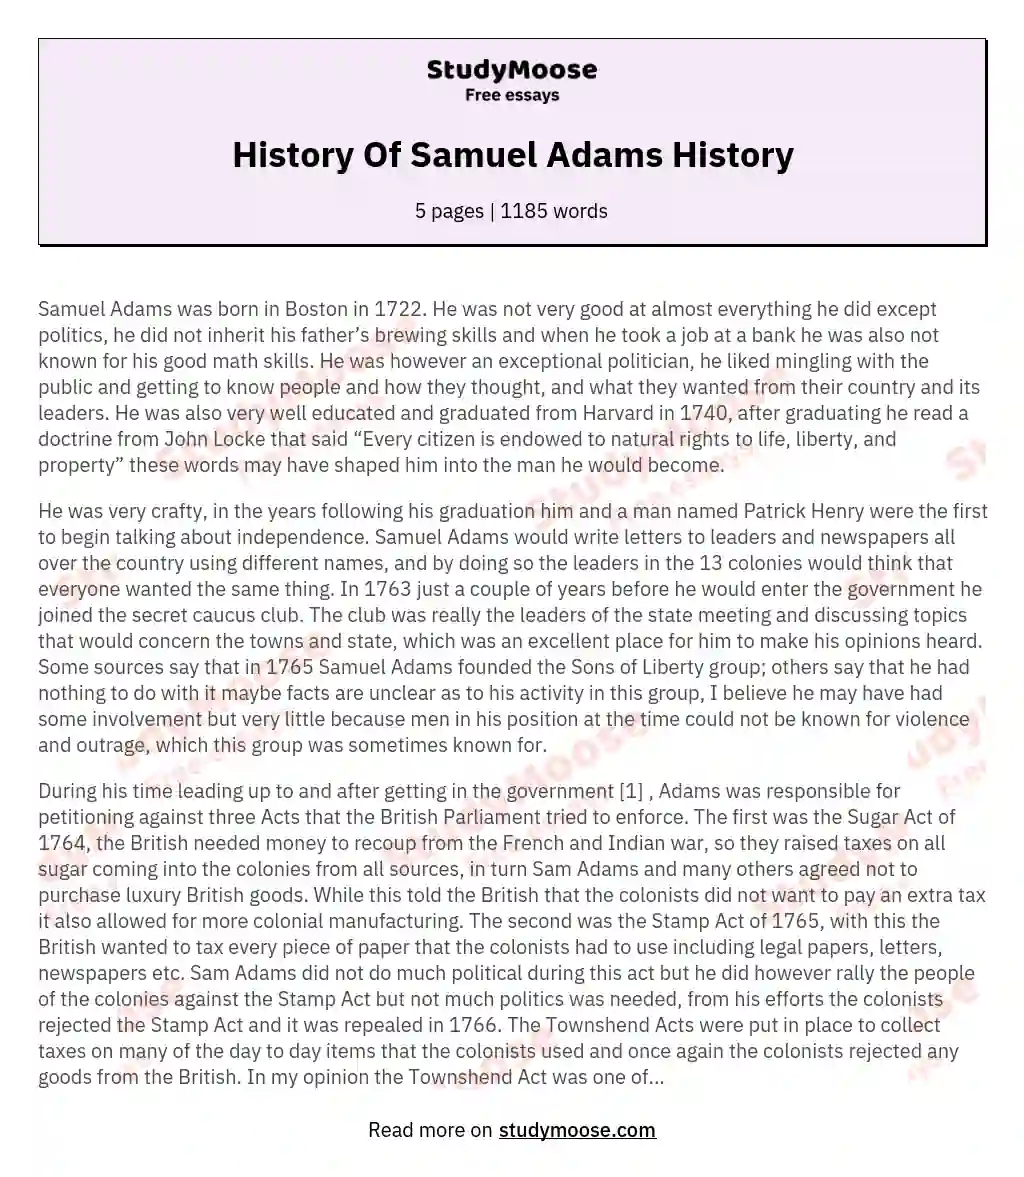 History Of Samuel Adams History essay